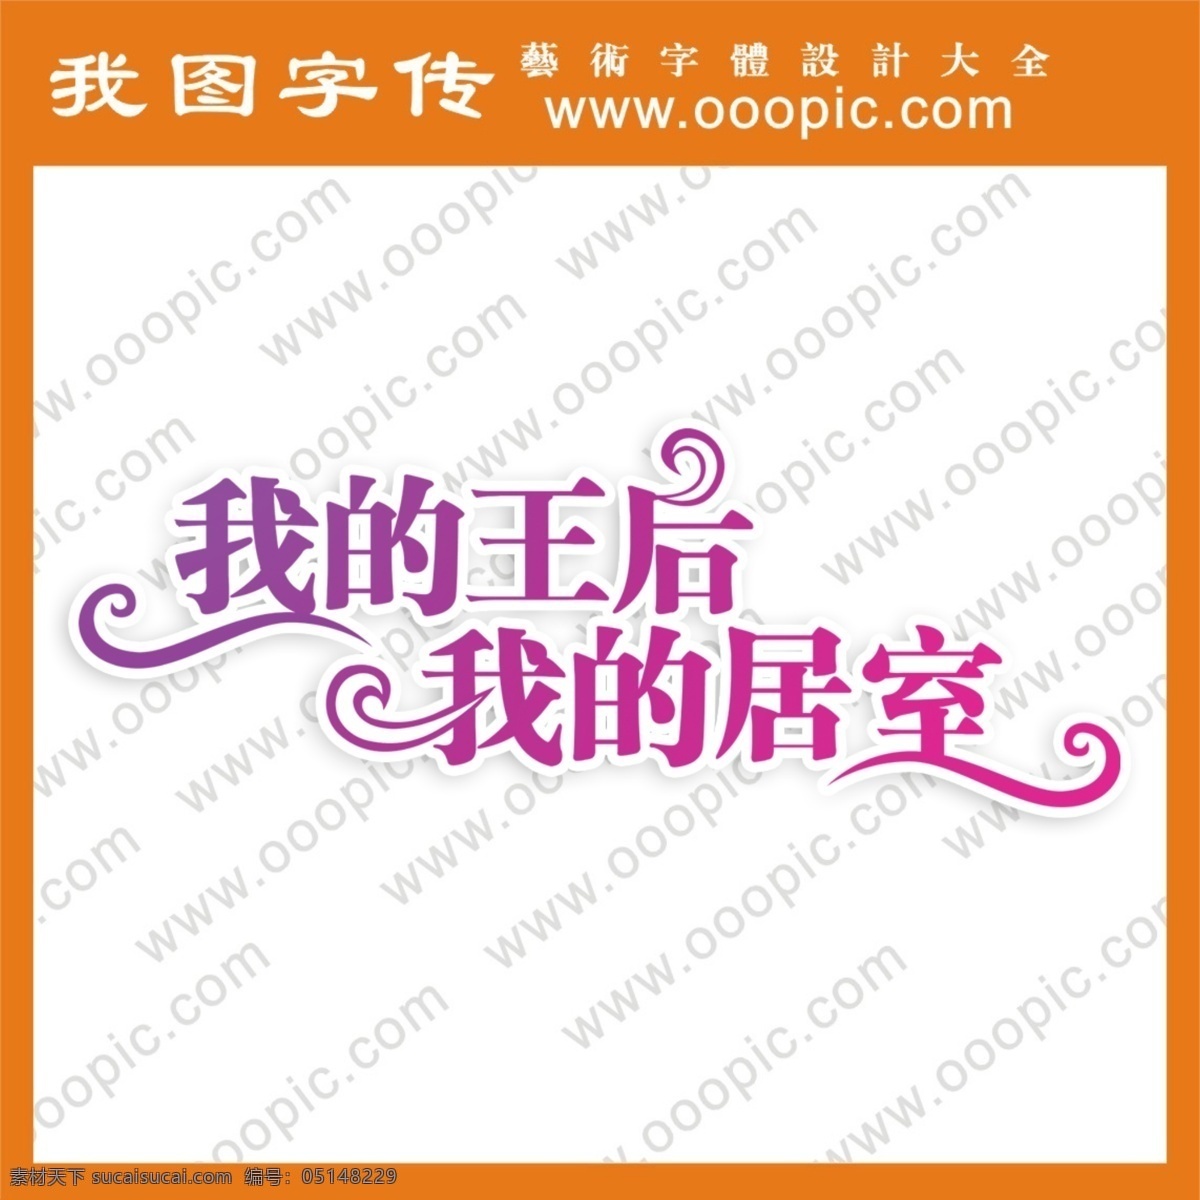 qq 艺术 字 艺术字 艺术字设计 艺术字制作 艺术字转换 在线艺术字 中文 现代艺术 字体设计 王后 psd源文件